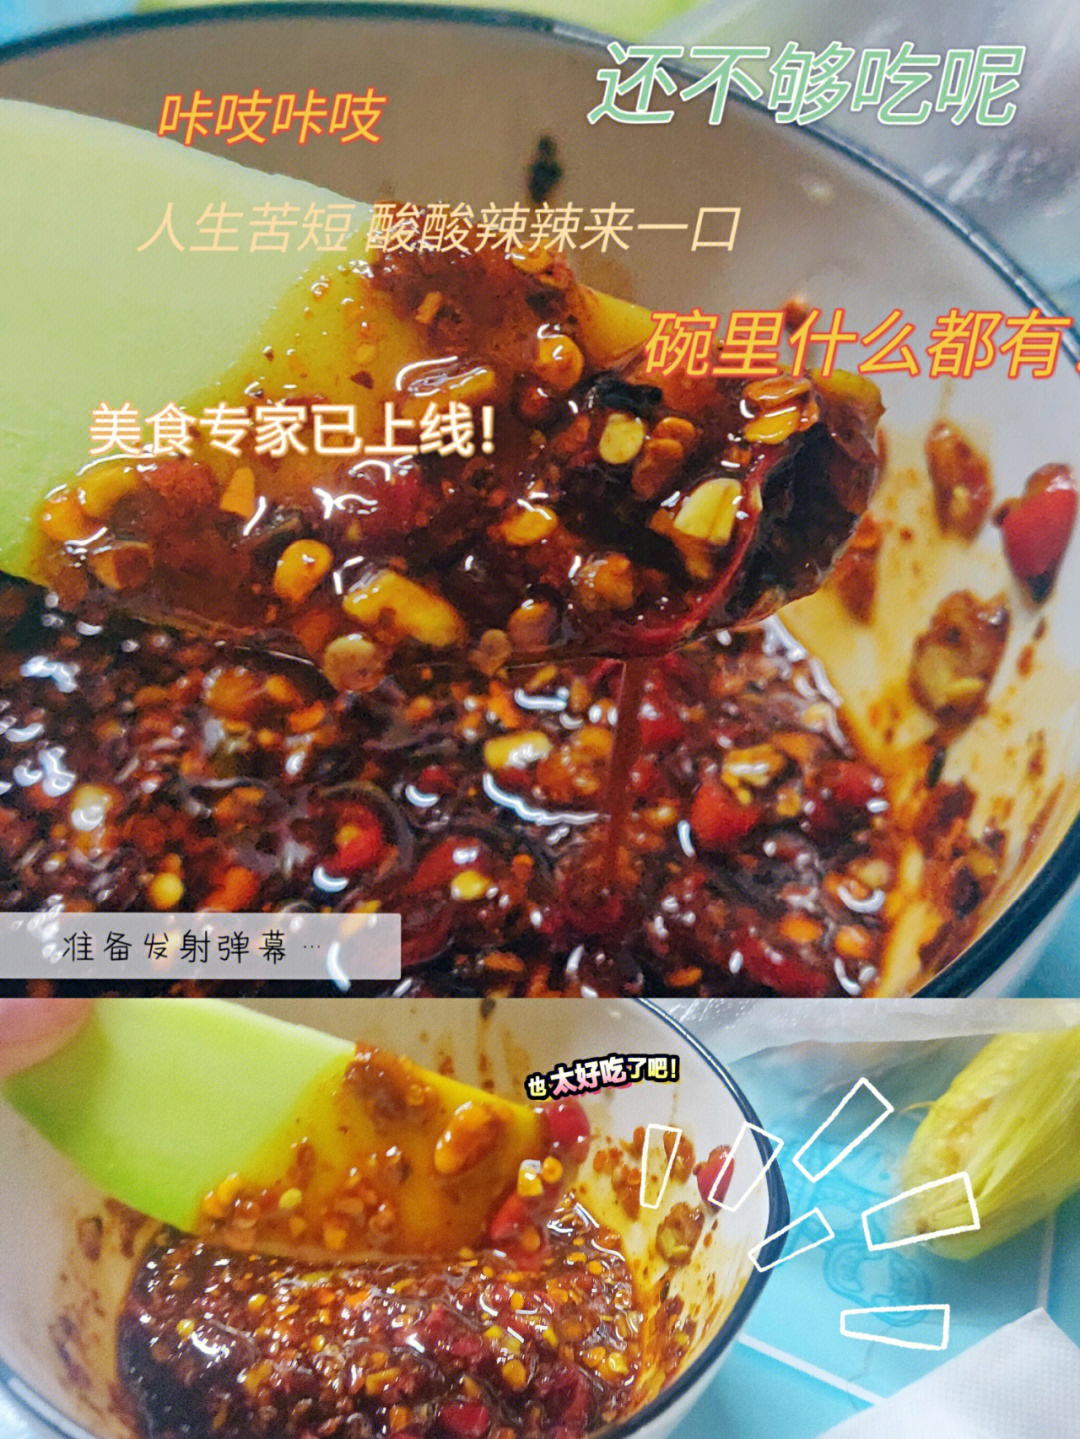 小米辣蘸水的做法图解图片